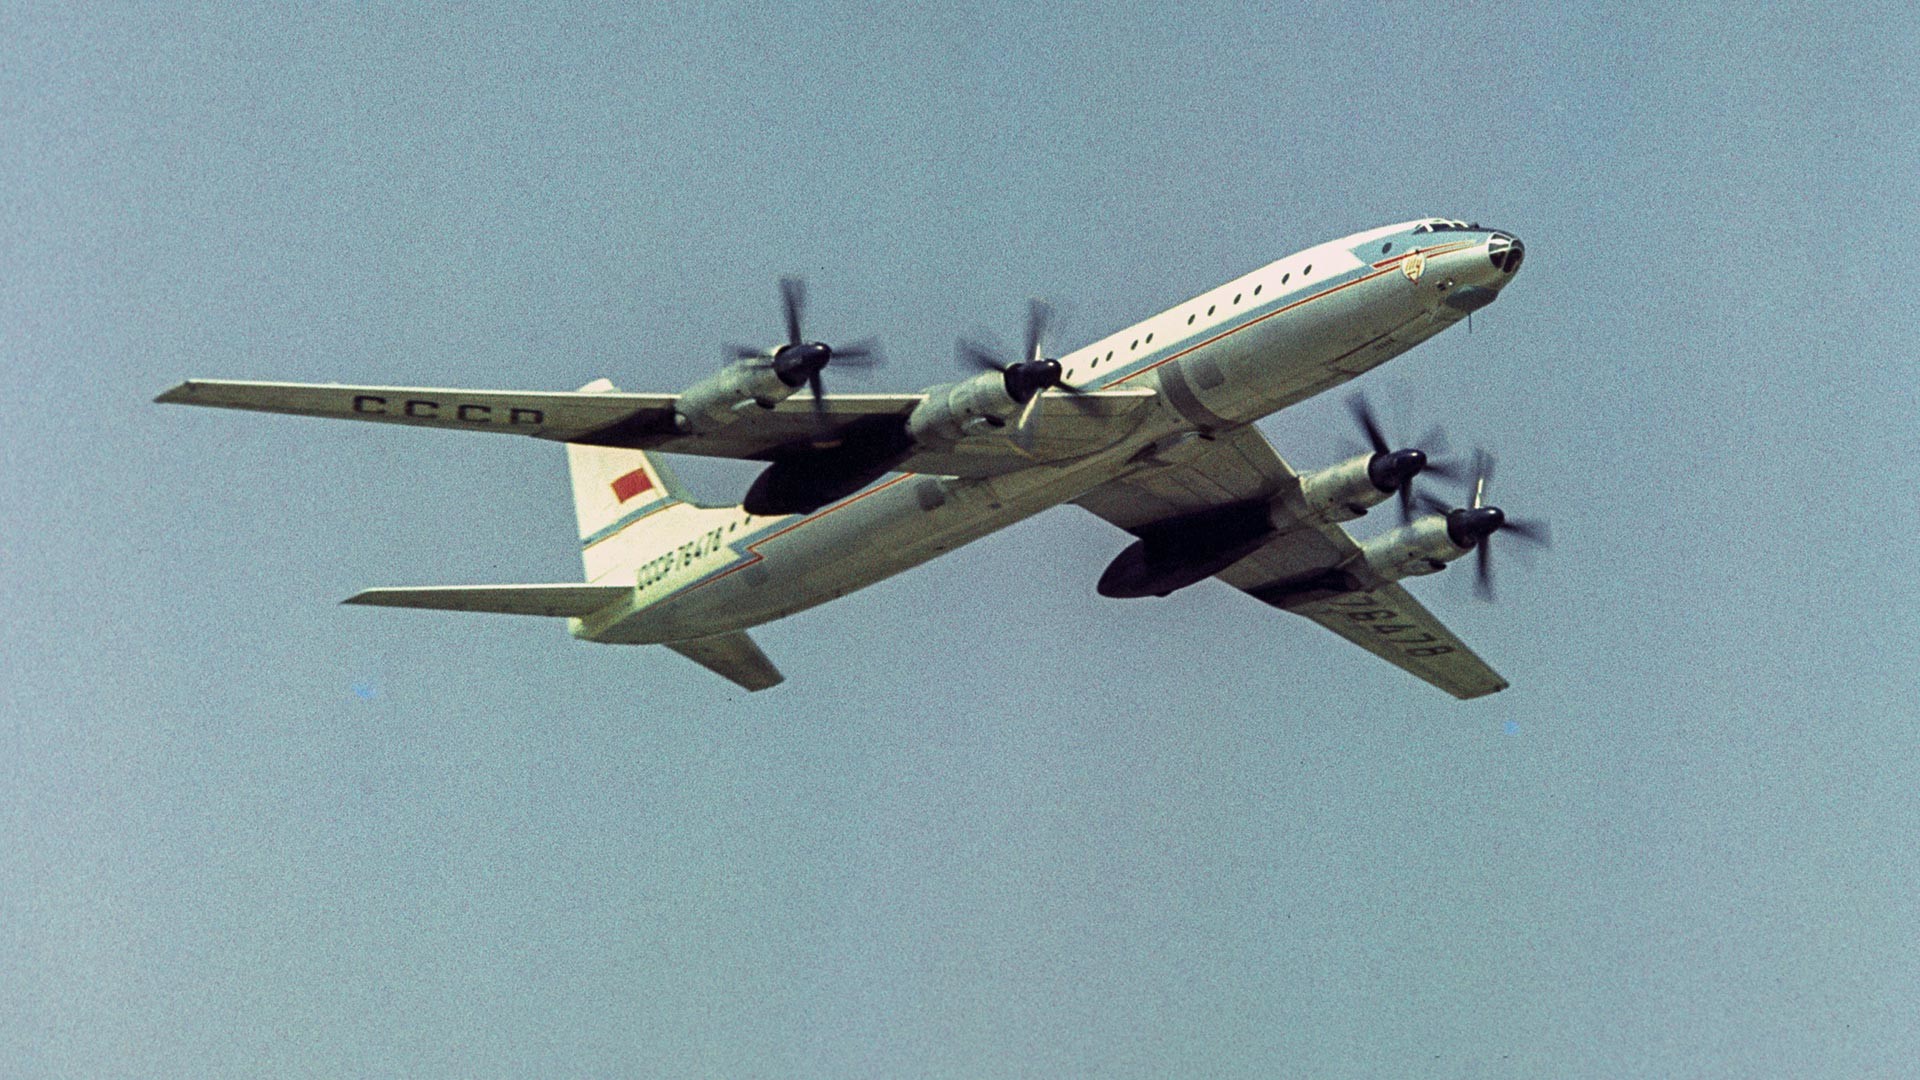 Flugurlaub am Flughafen Domodedowo, der dem 50. Jahrestag der Großen Oktoberrevolution gewidmet ist. Passagierflugzeug Tu-114.